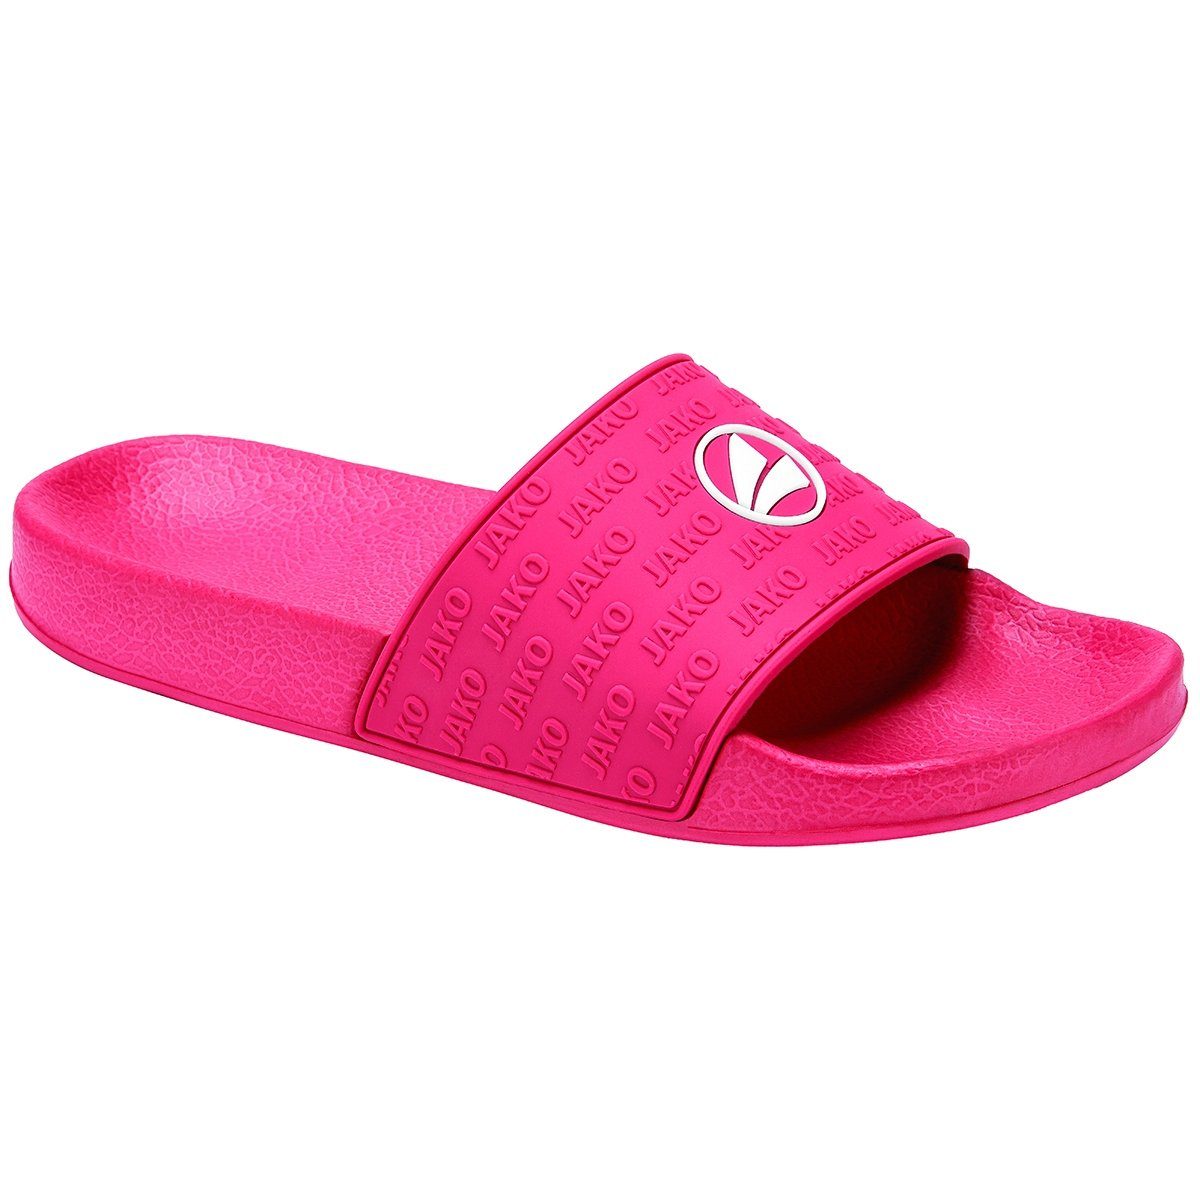 Sandalette Jako pink